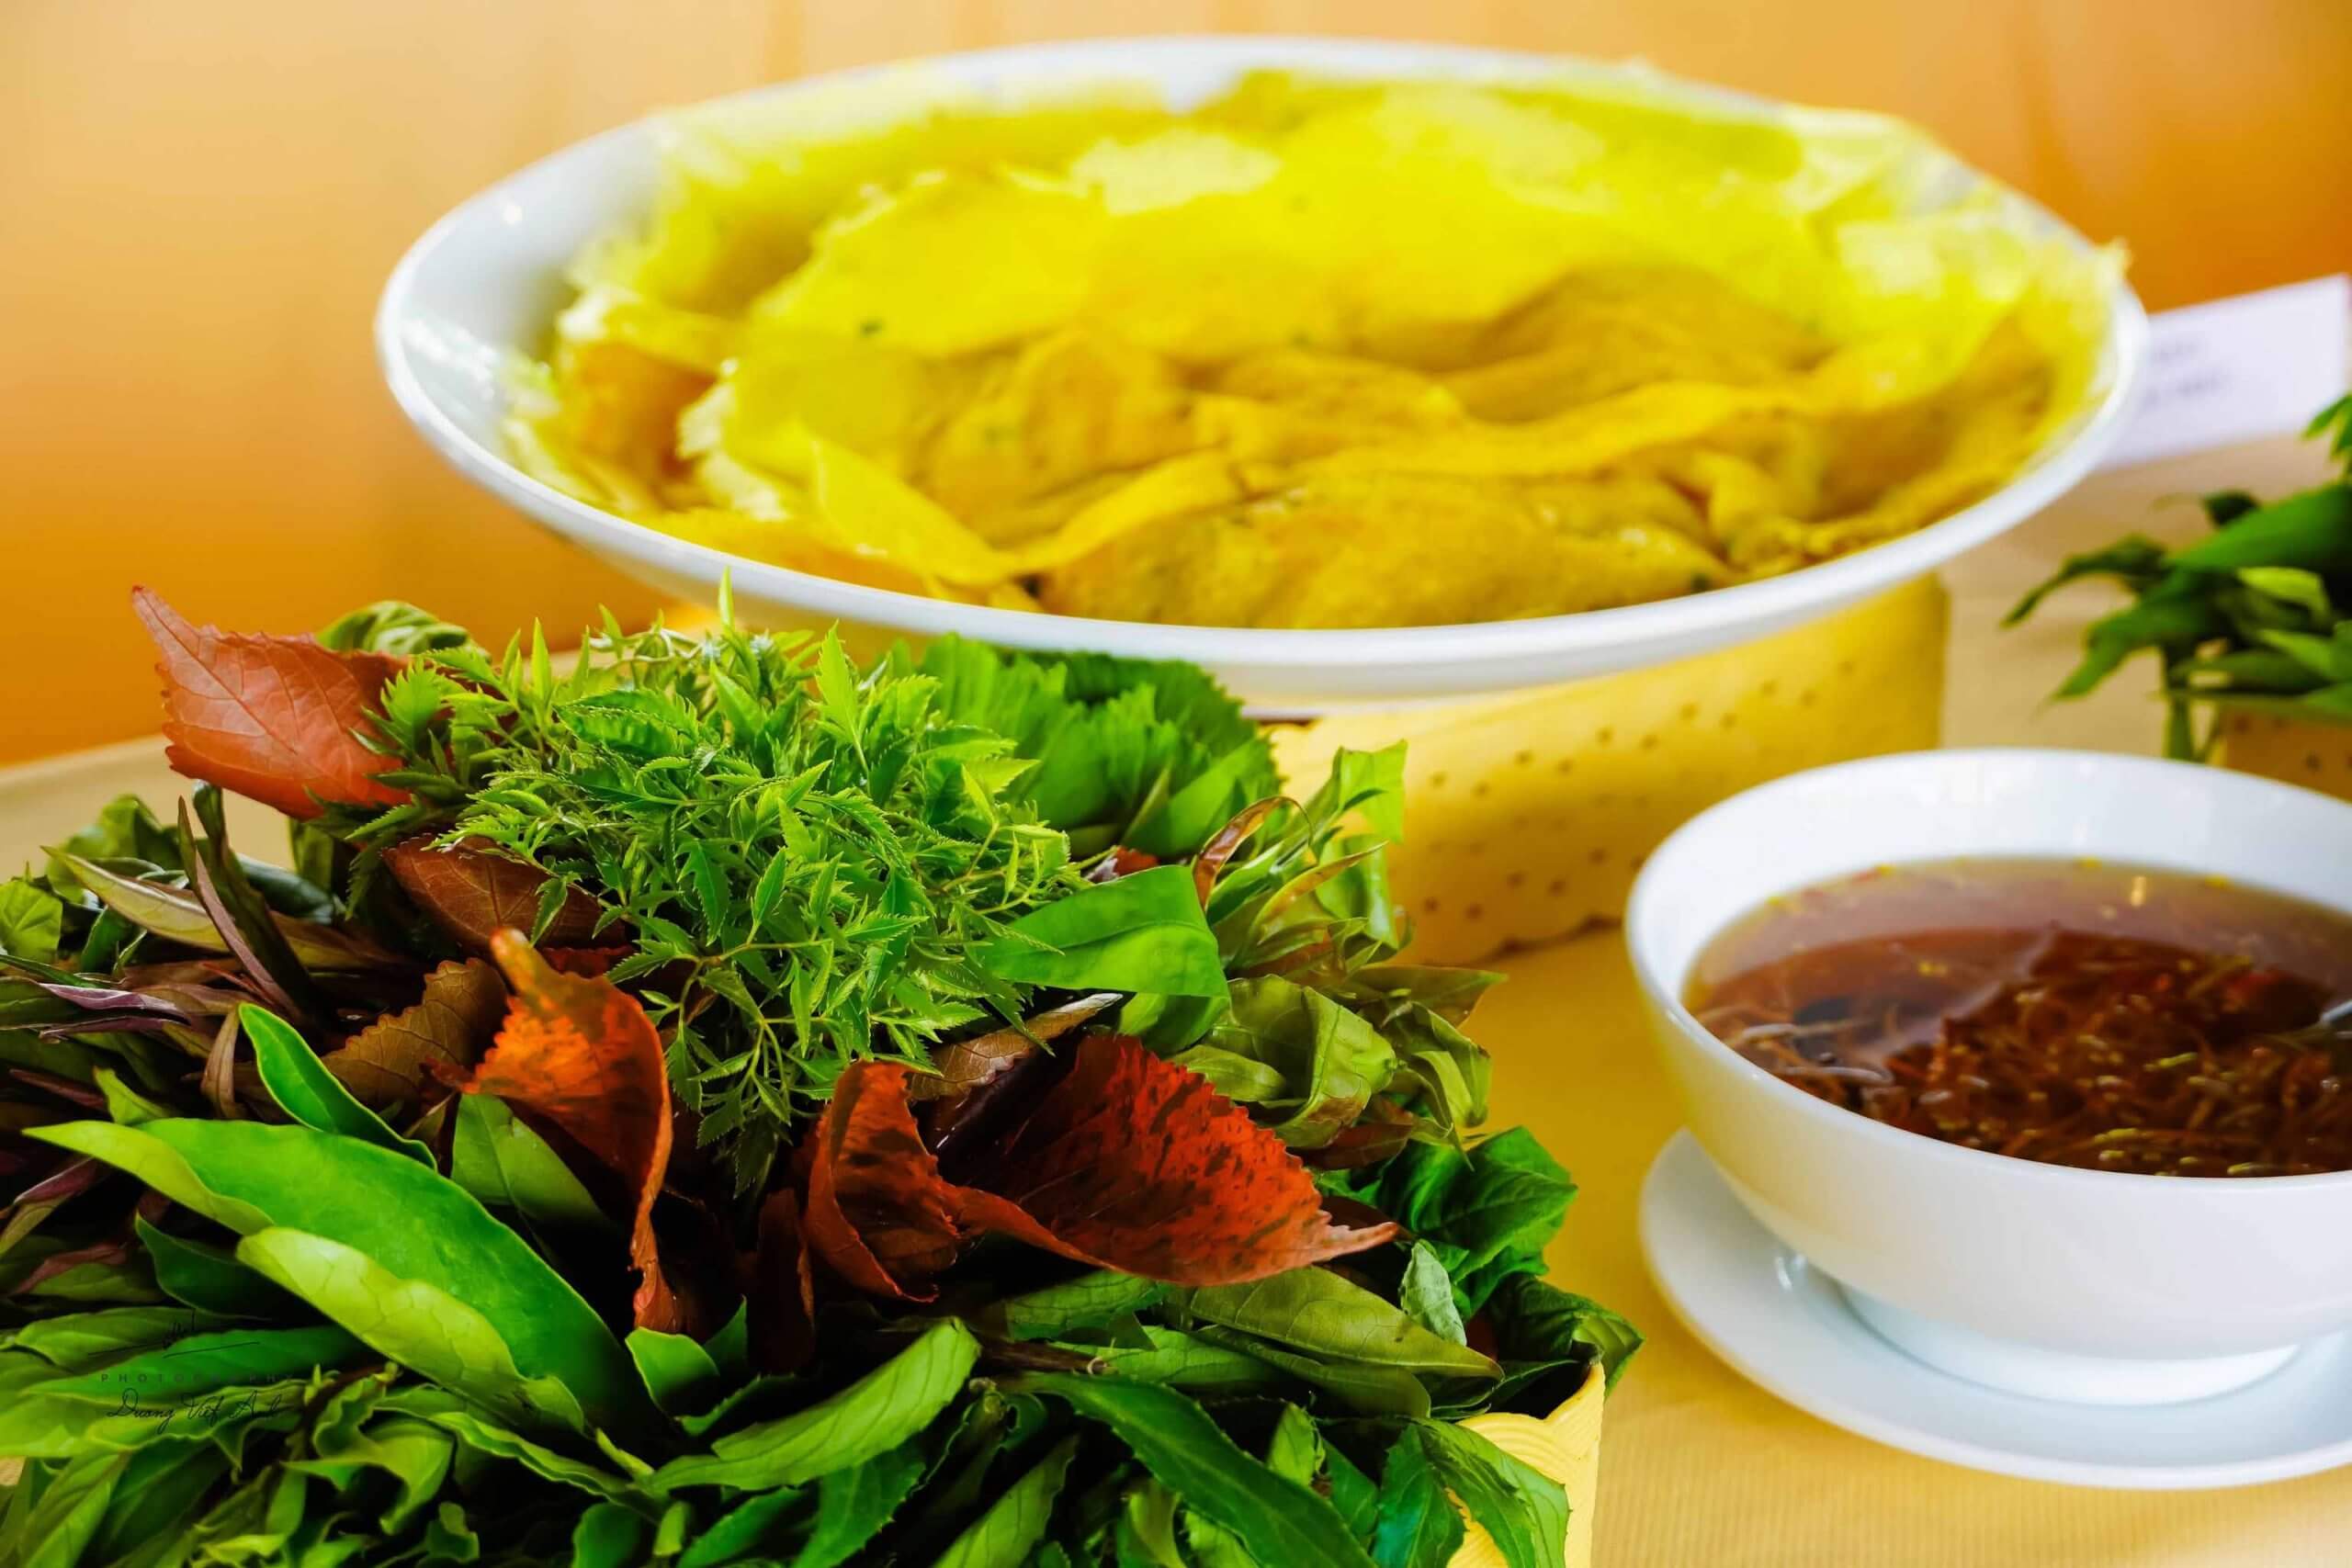 Bánh xèo ăn cùng rau rừng Núi Gấm là đặc sản những món ngon ở An Giang 